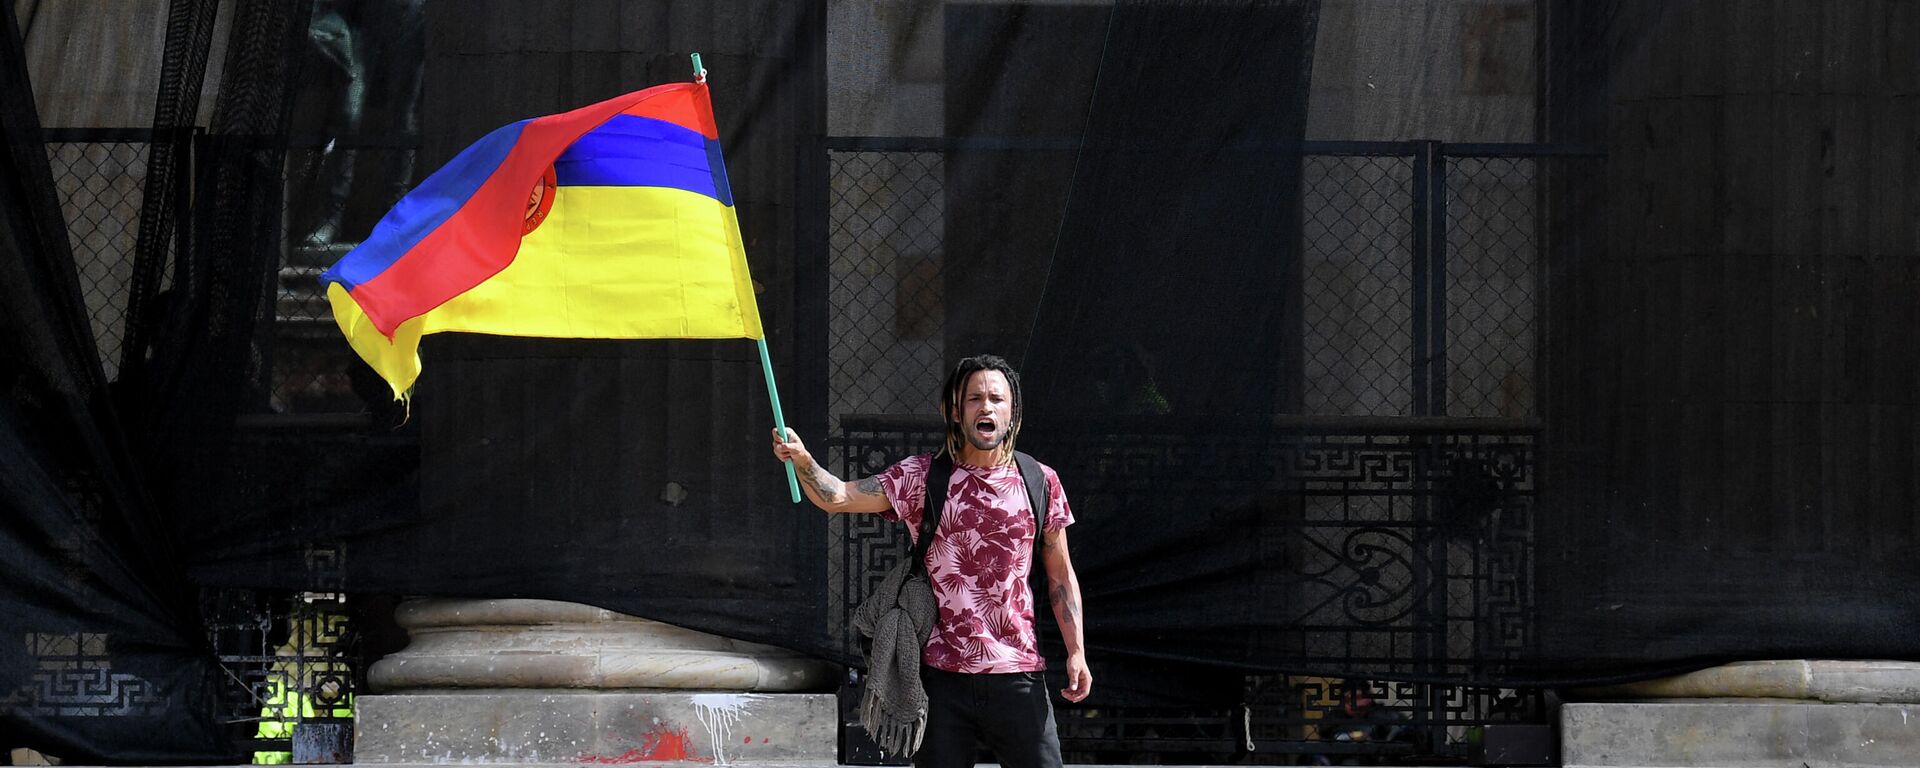 Un hombre con la bandera de Colombia del revés - Sputnik Mundo, 1920, 15.05.2021